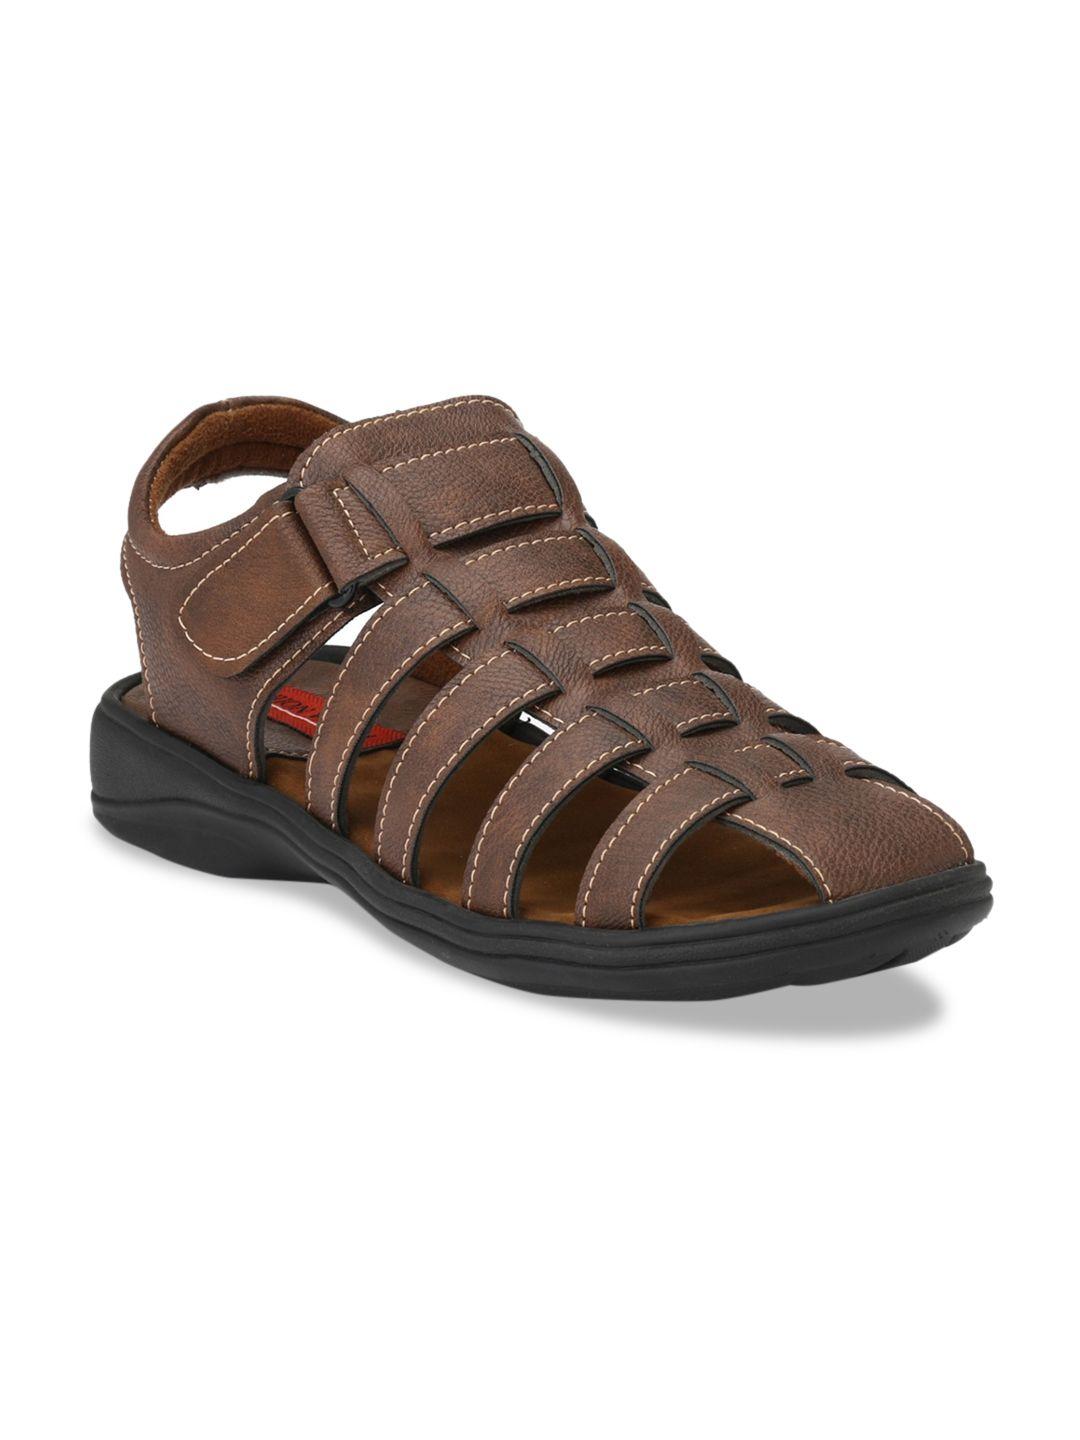 fashion victim men brown shoe-style sandals